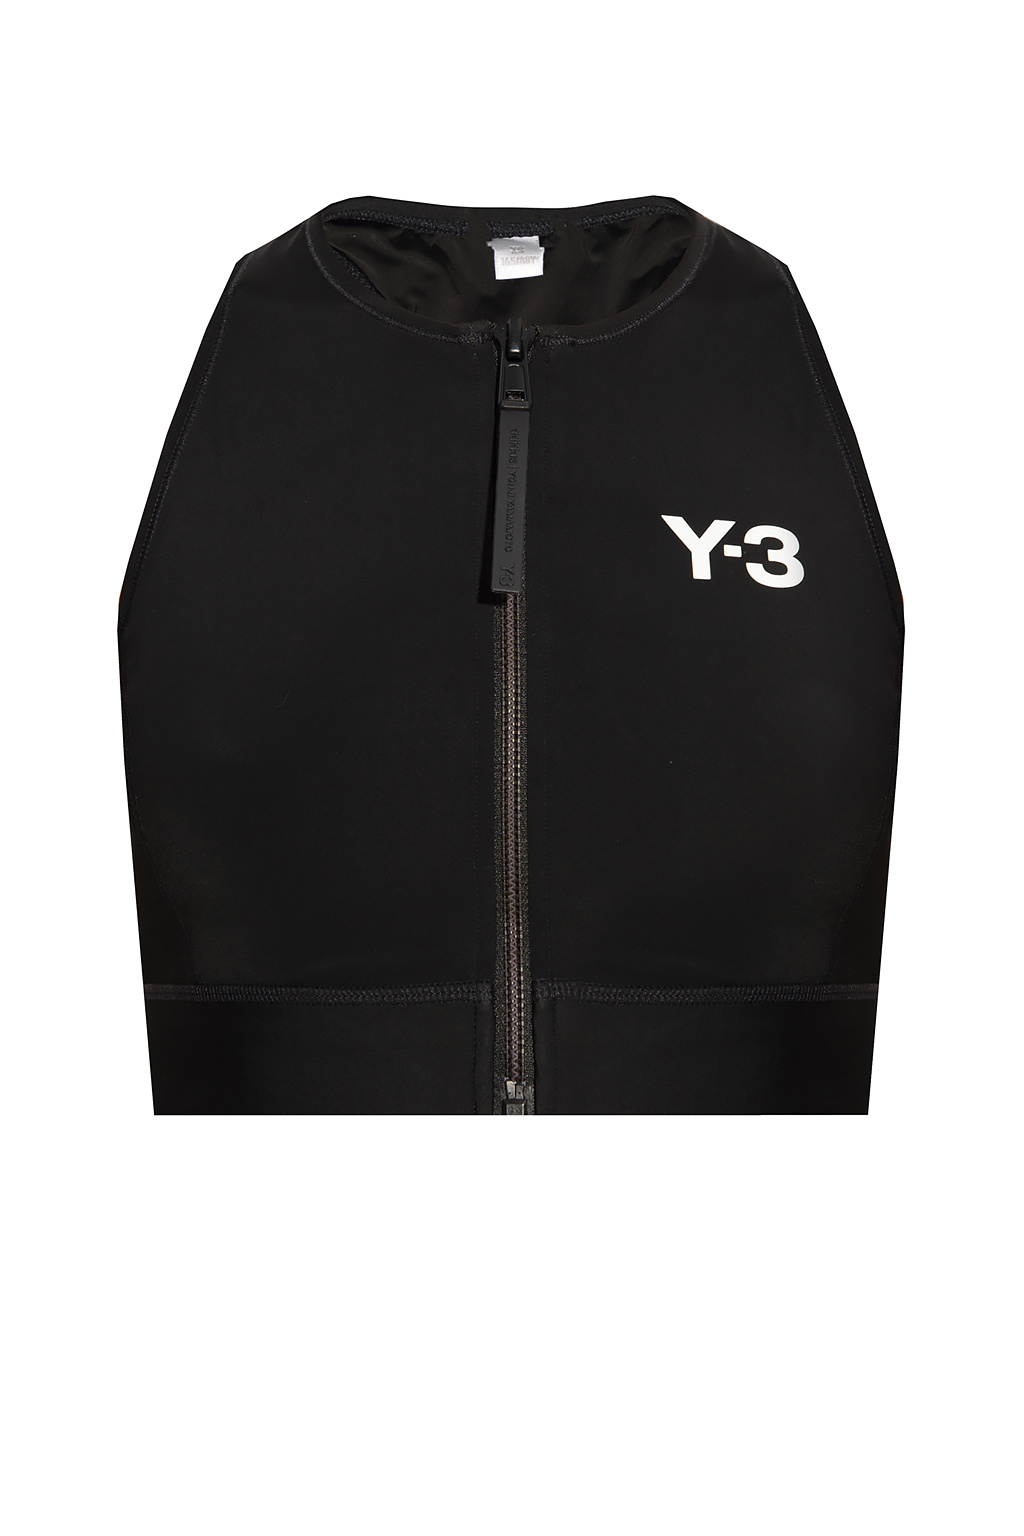 Y-3 Yohji Yamamoto Swimsuit top